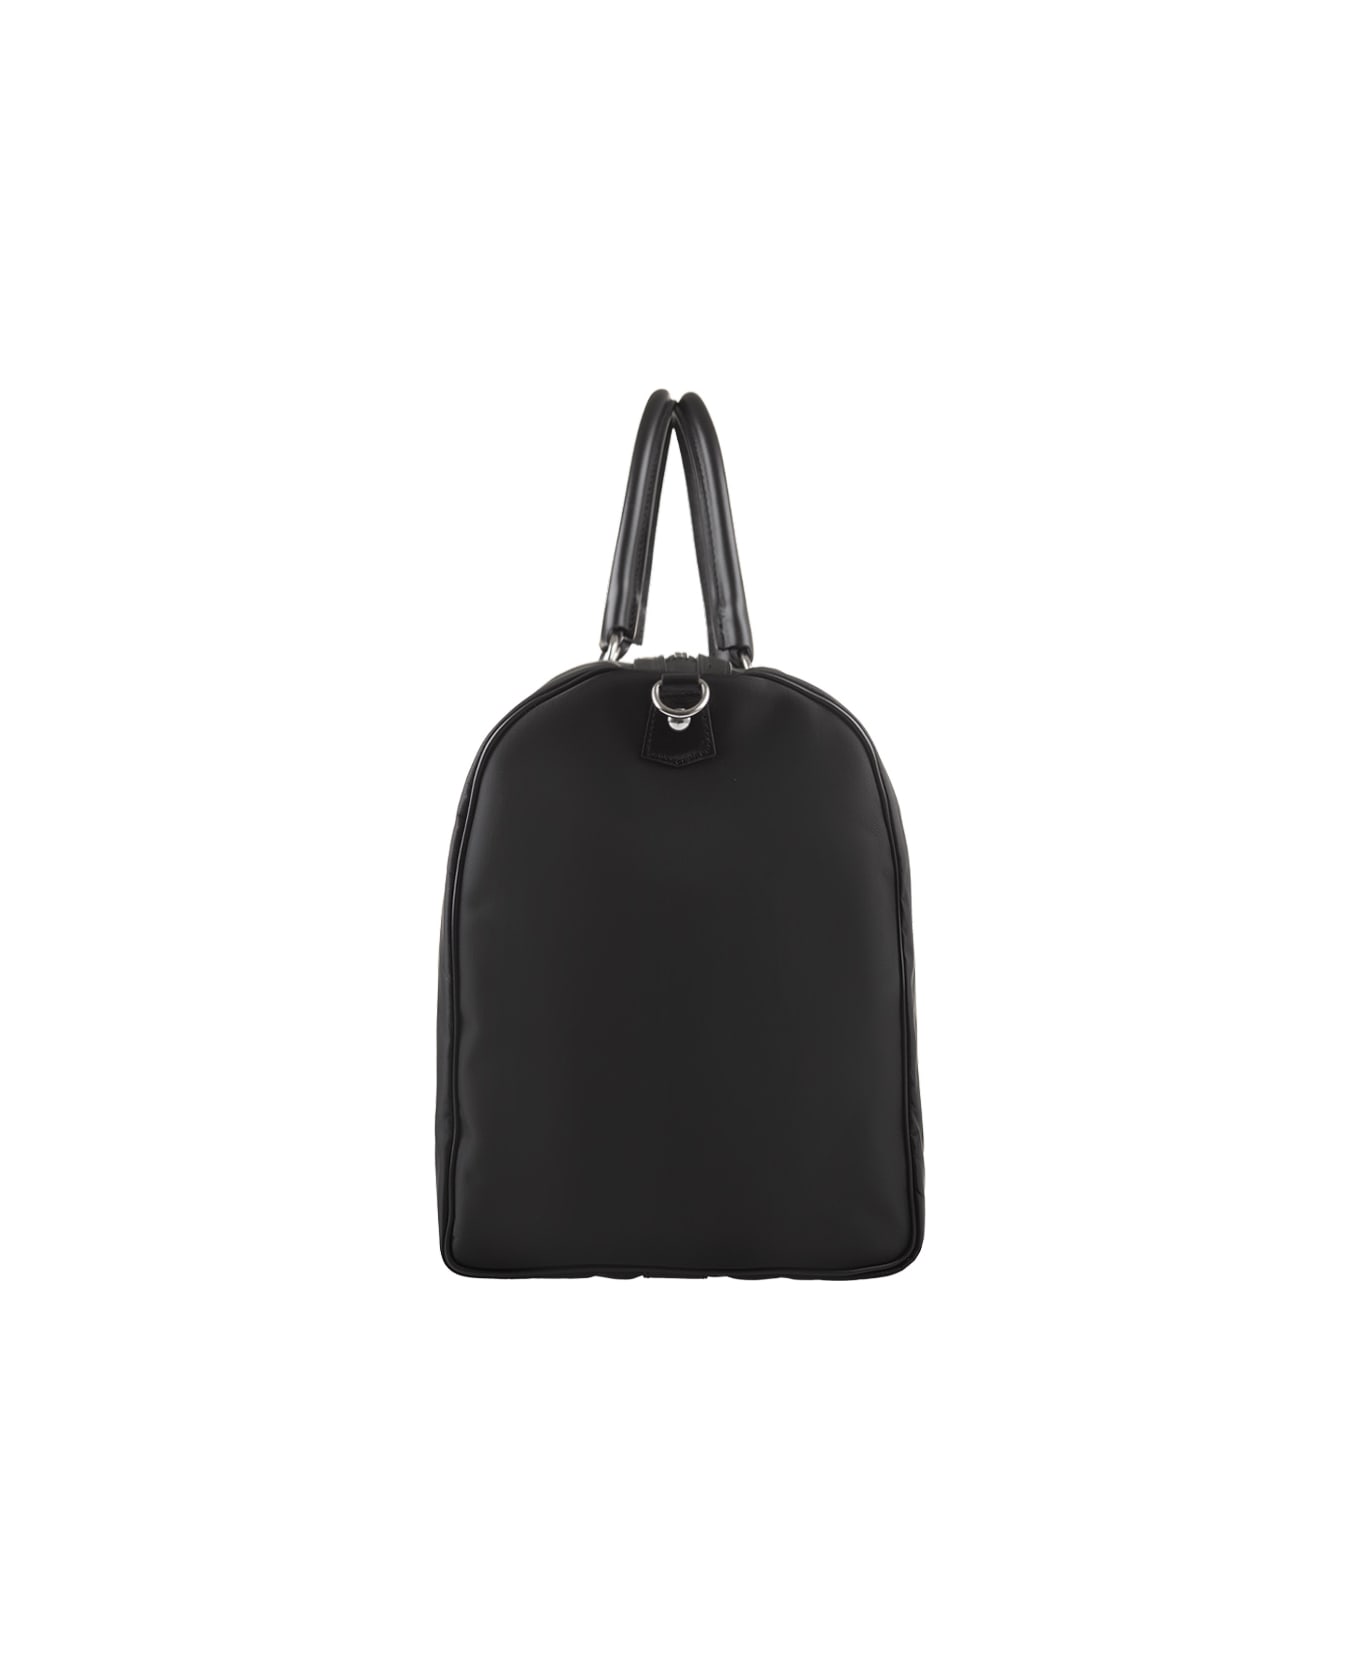 Kiton Black Travel Bag With Logo - Black トラベルバッグ